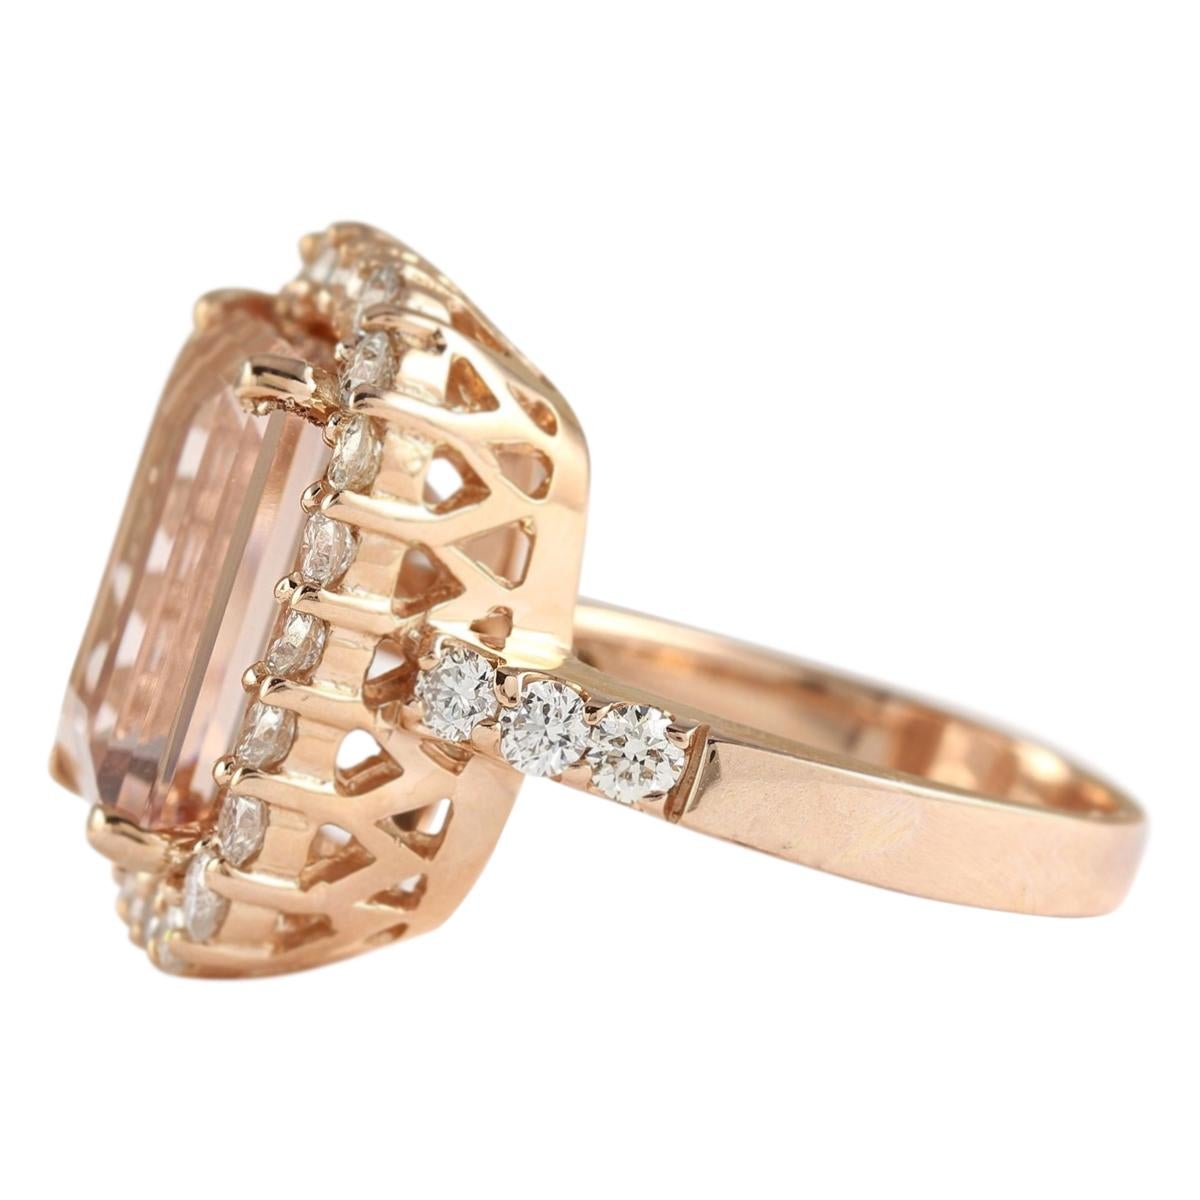 8.33 Carat Natural Morganite 14 Karat Rose Gold Diamond Ring
Stamped: 14K Rose Gold
Total Ring Weight: 10.7 Grams
Total Natural Morganite Weight is 6.68 Carat (Measures: 14.00x10.00 mm)
Color: Peach
Total Natural Diamond Weight is 1.65 Carat
Color: